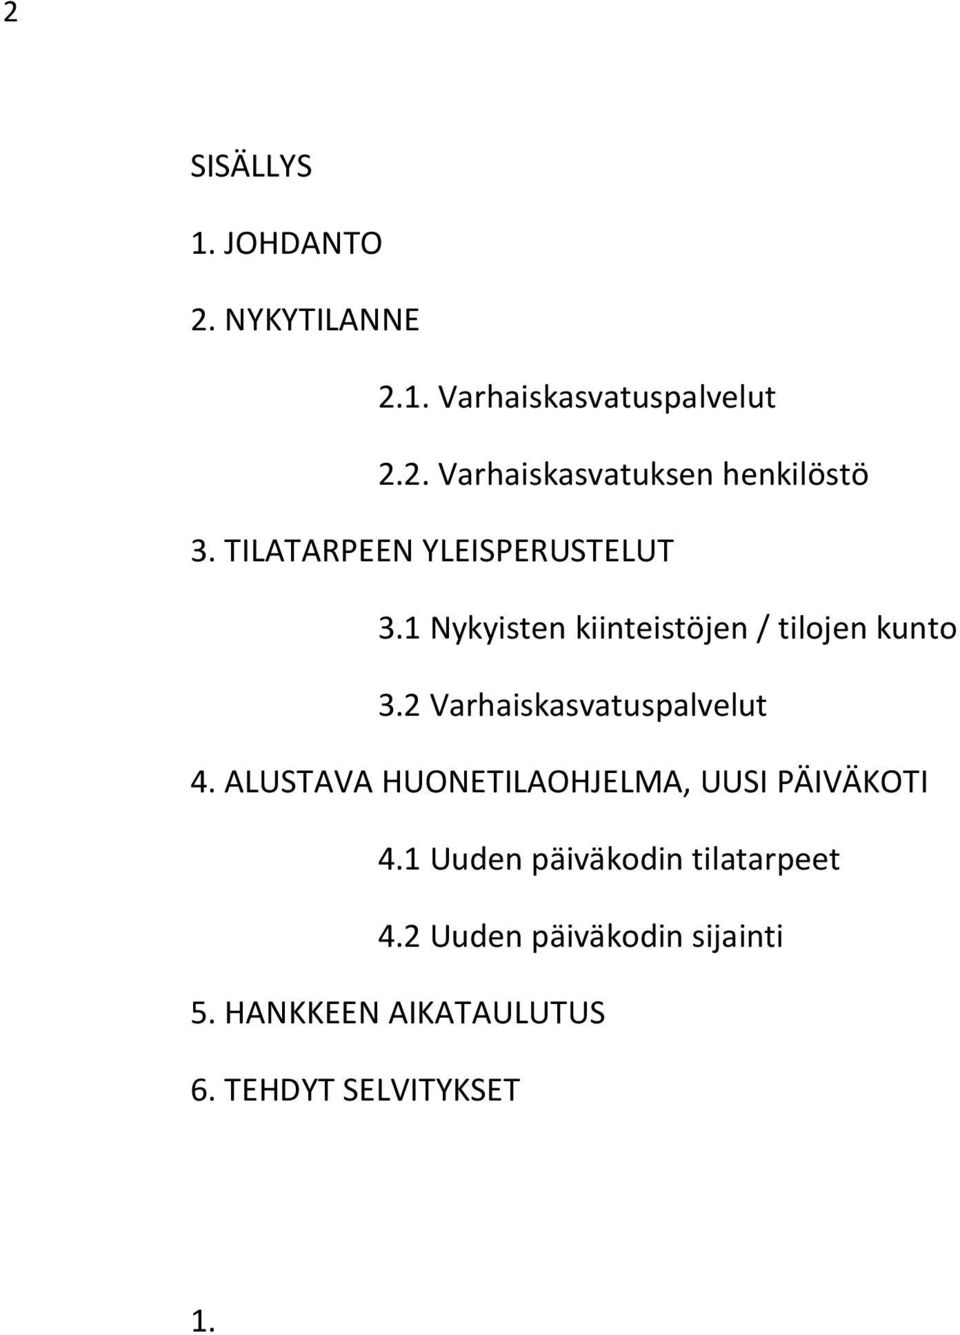 2 Varhaiskasvatuspalvelut 4. ALUSTAVA HUONETILAOHJELMA, UUSI PÄIVÄKOTI 4.